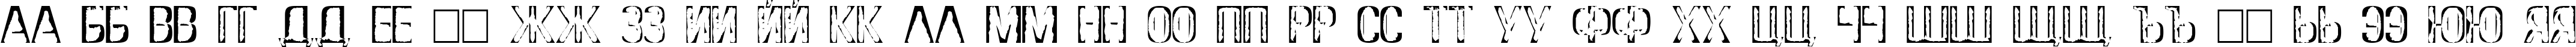 Пример написания русского алфавита шрифтом DS Stamp Cyr